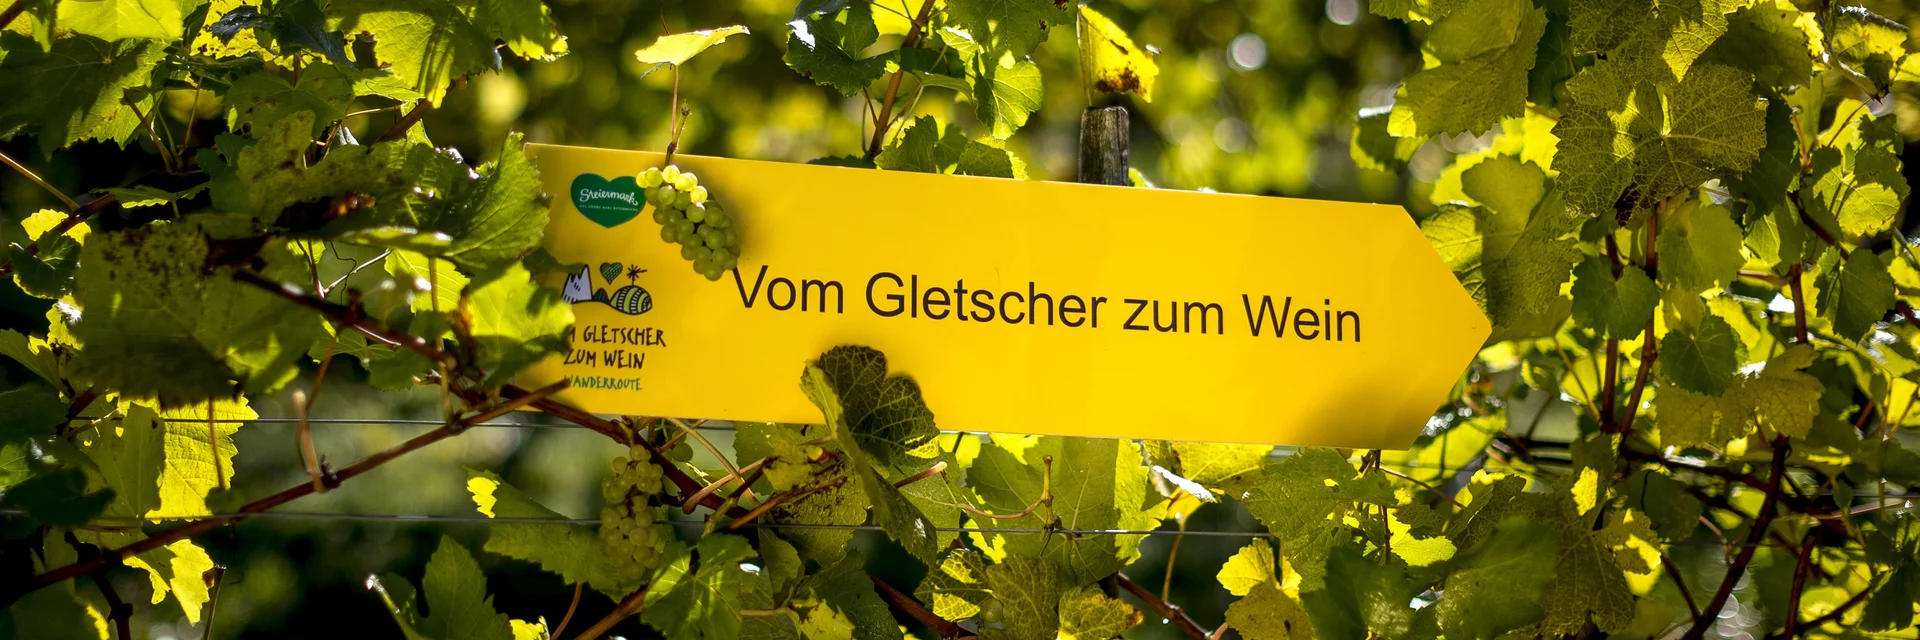 Wanderroute "Vom Gletscher zum Wein" | © STG | Tom Lamm